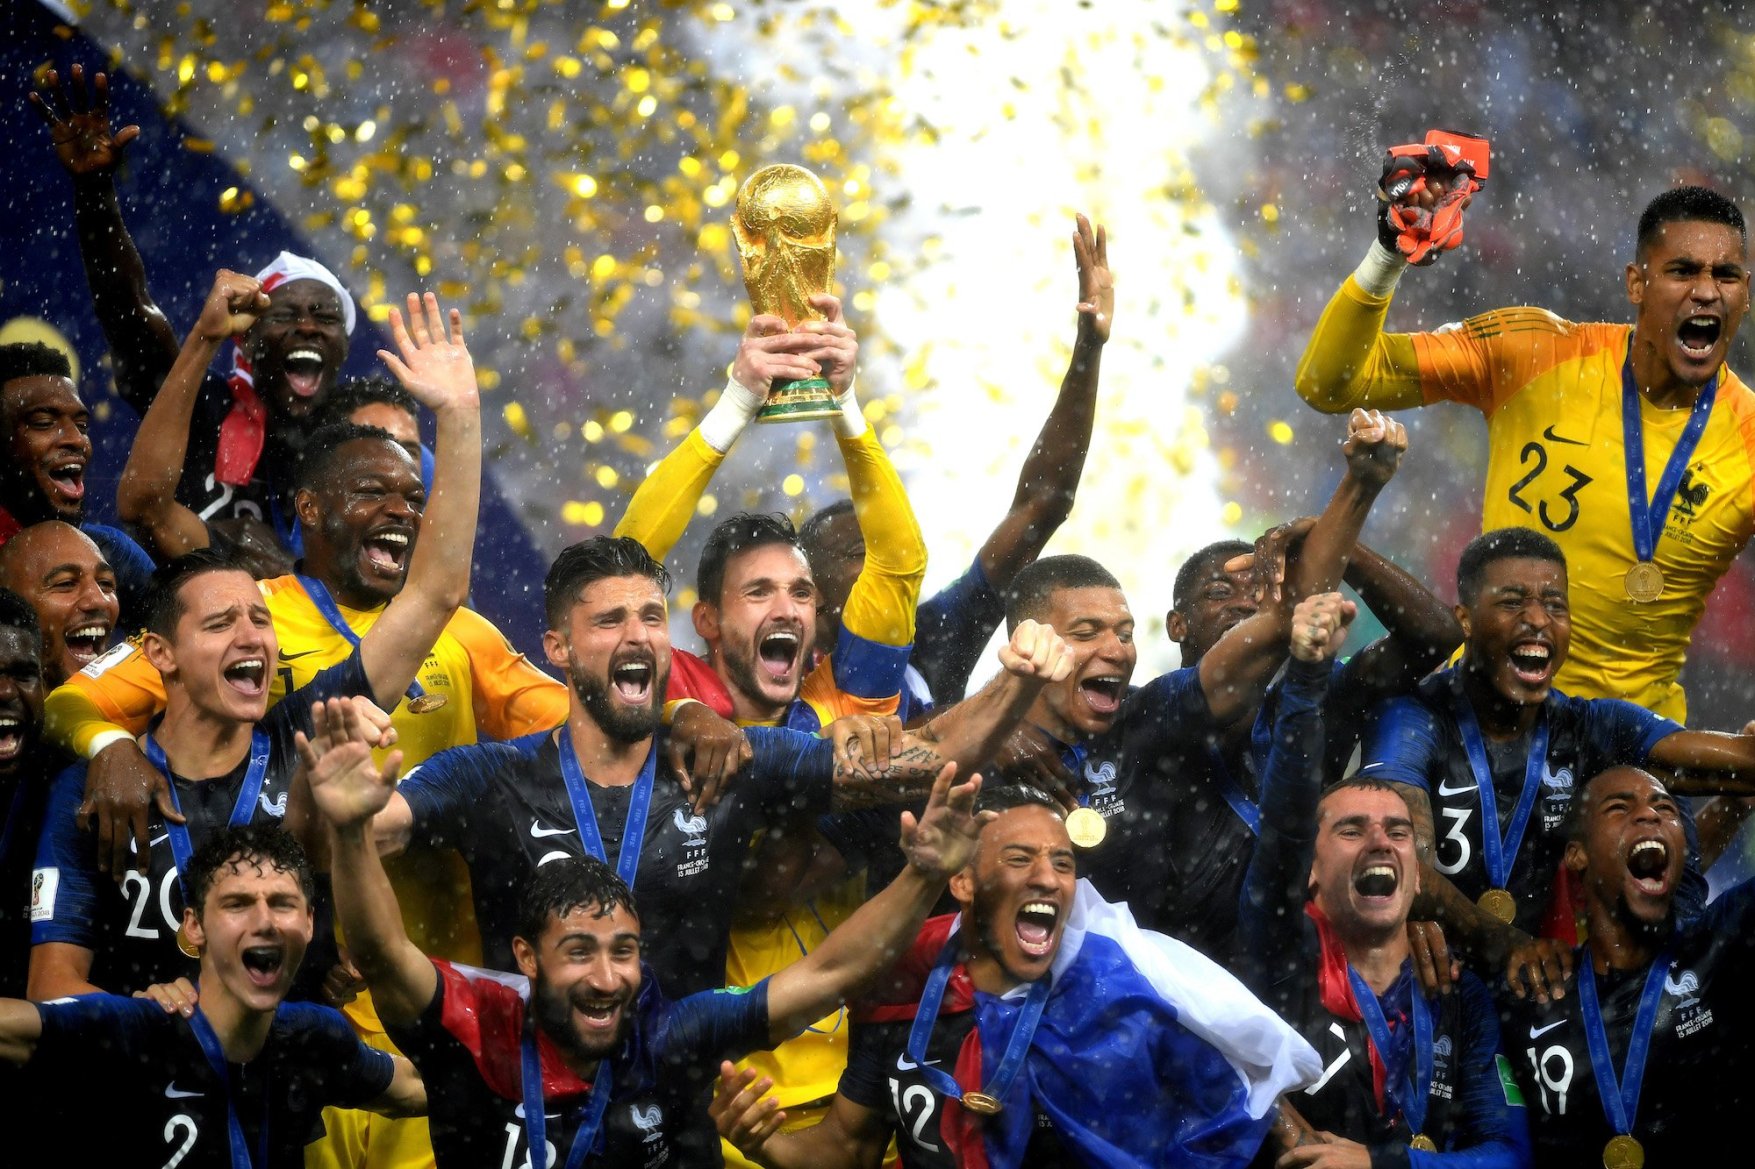 2018 世界杯《FIFA》游戏连续三届「世界杯」成功预测最终冠军